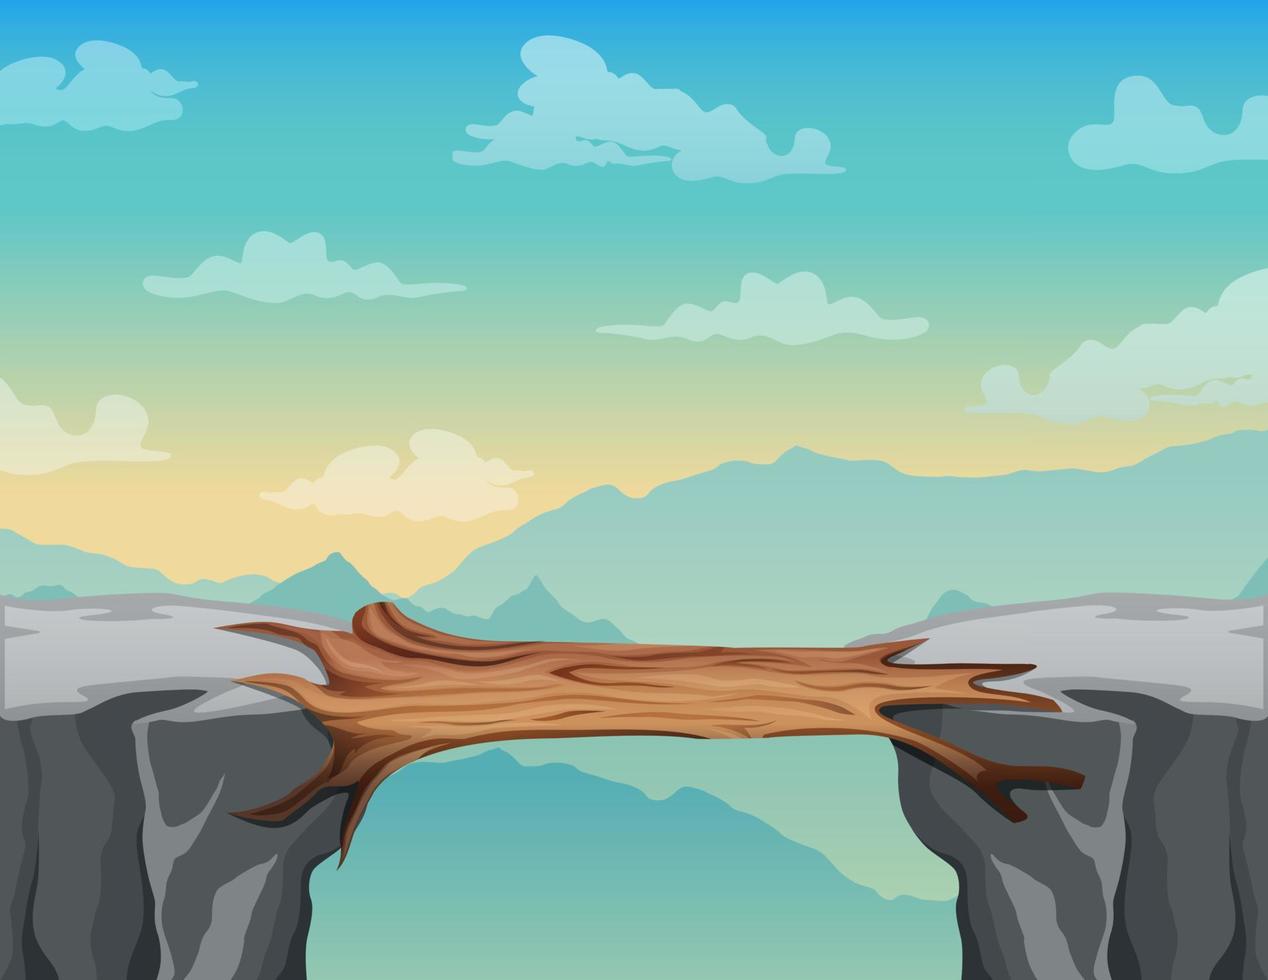 Log bridge between mountains above cliff in rock peaks landscape vector